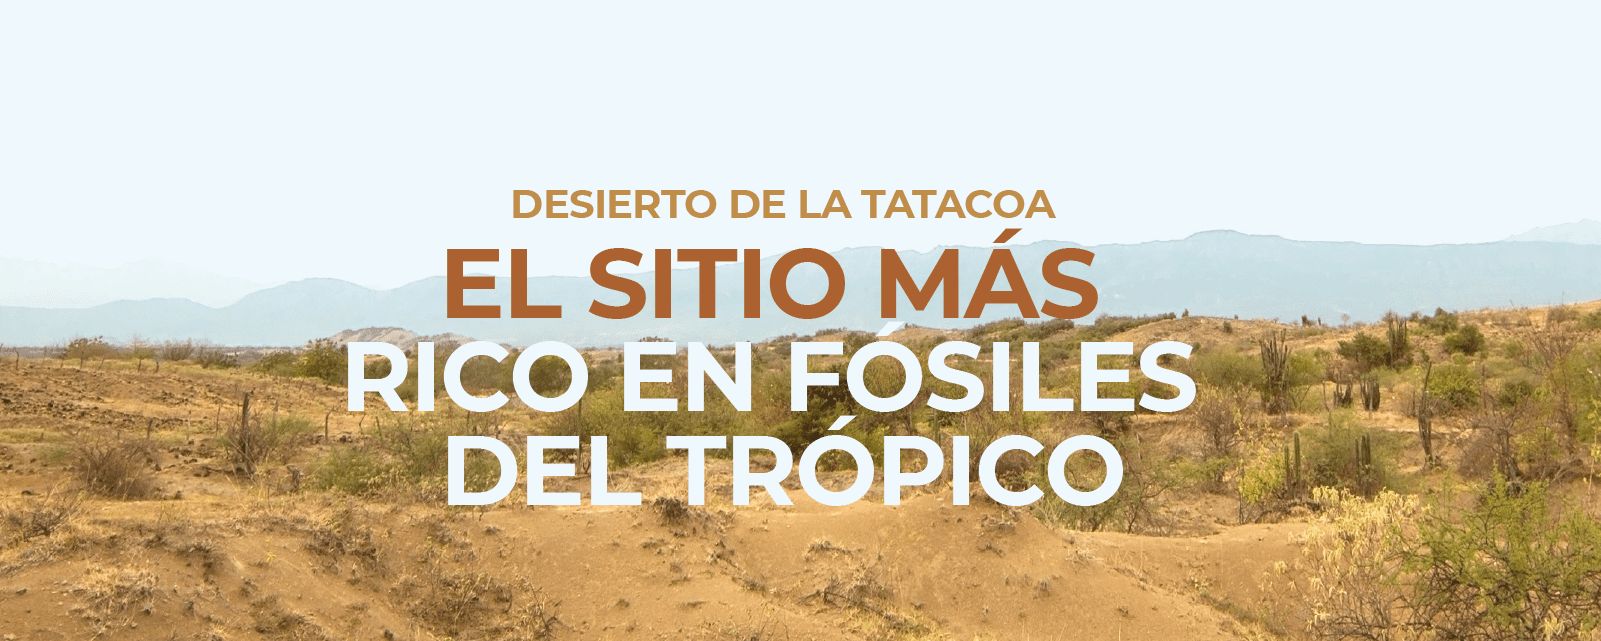 Desierto de la Tatacoa: El sitio más rico en fósiles del trópico